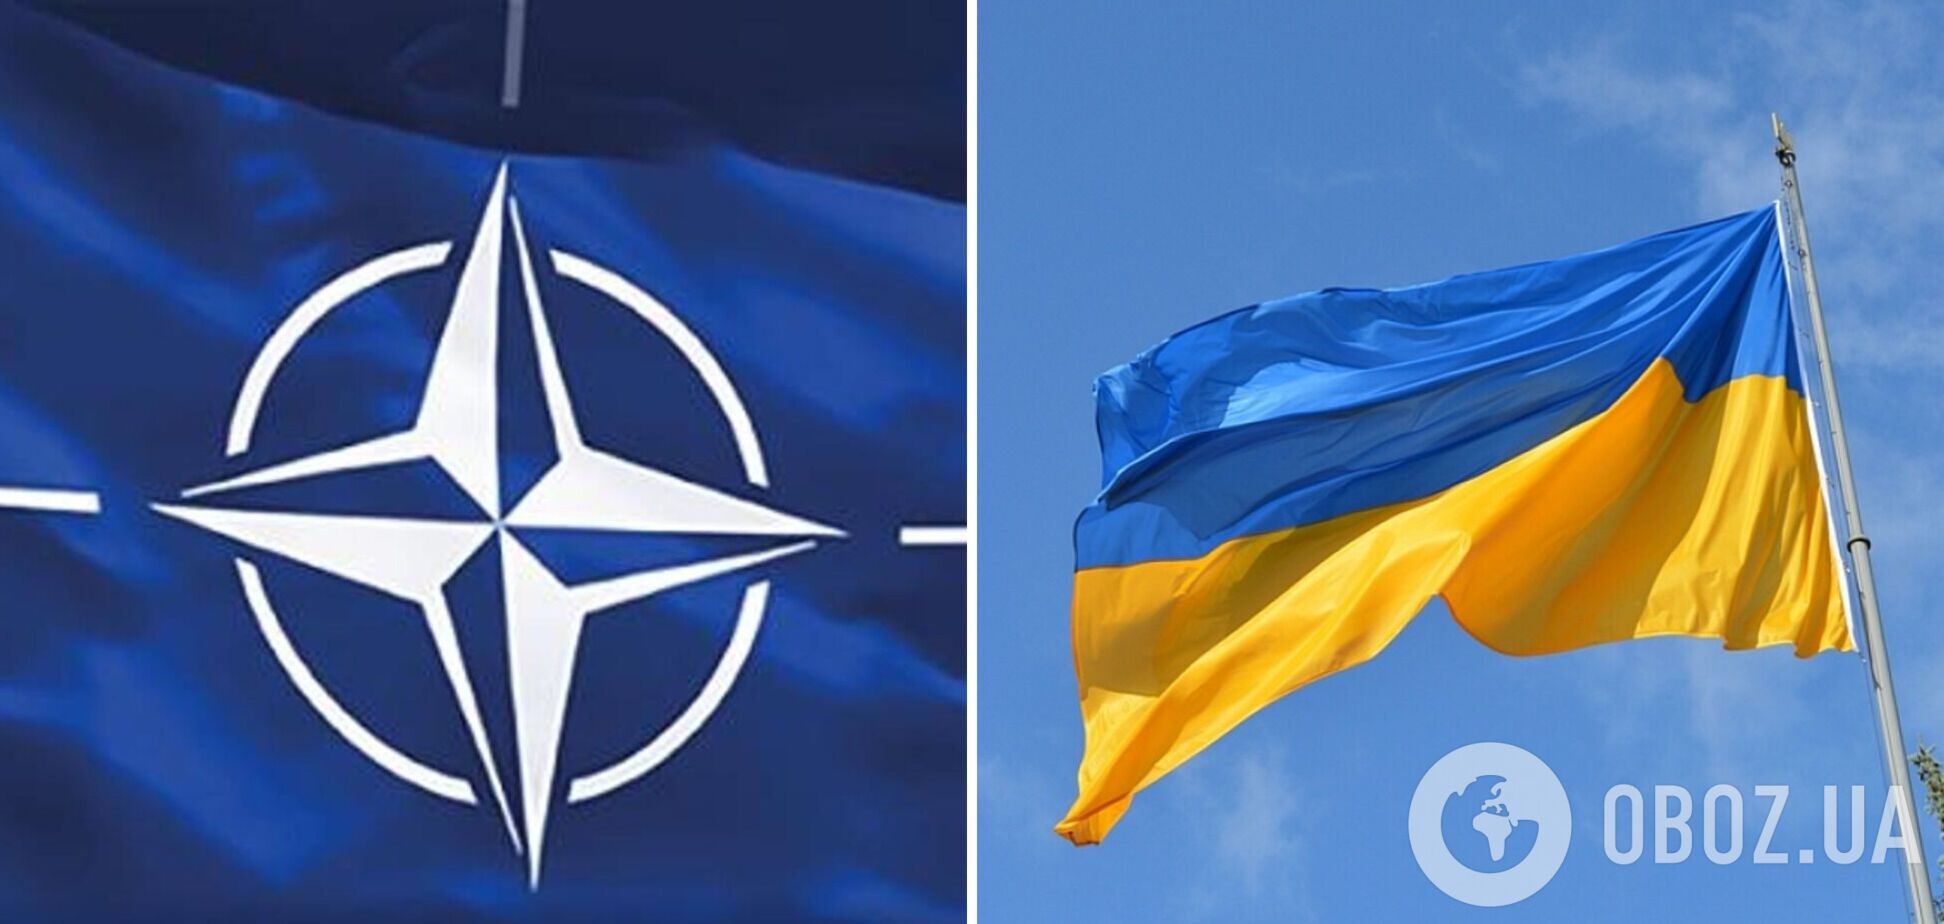 'Наше предложение очень простое': в НАТО заявили, что должны играть более выраженную координирующую роль в поддержке Украины